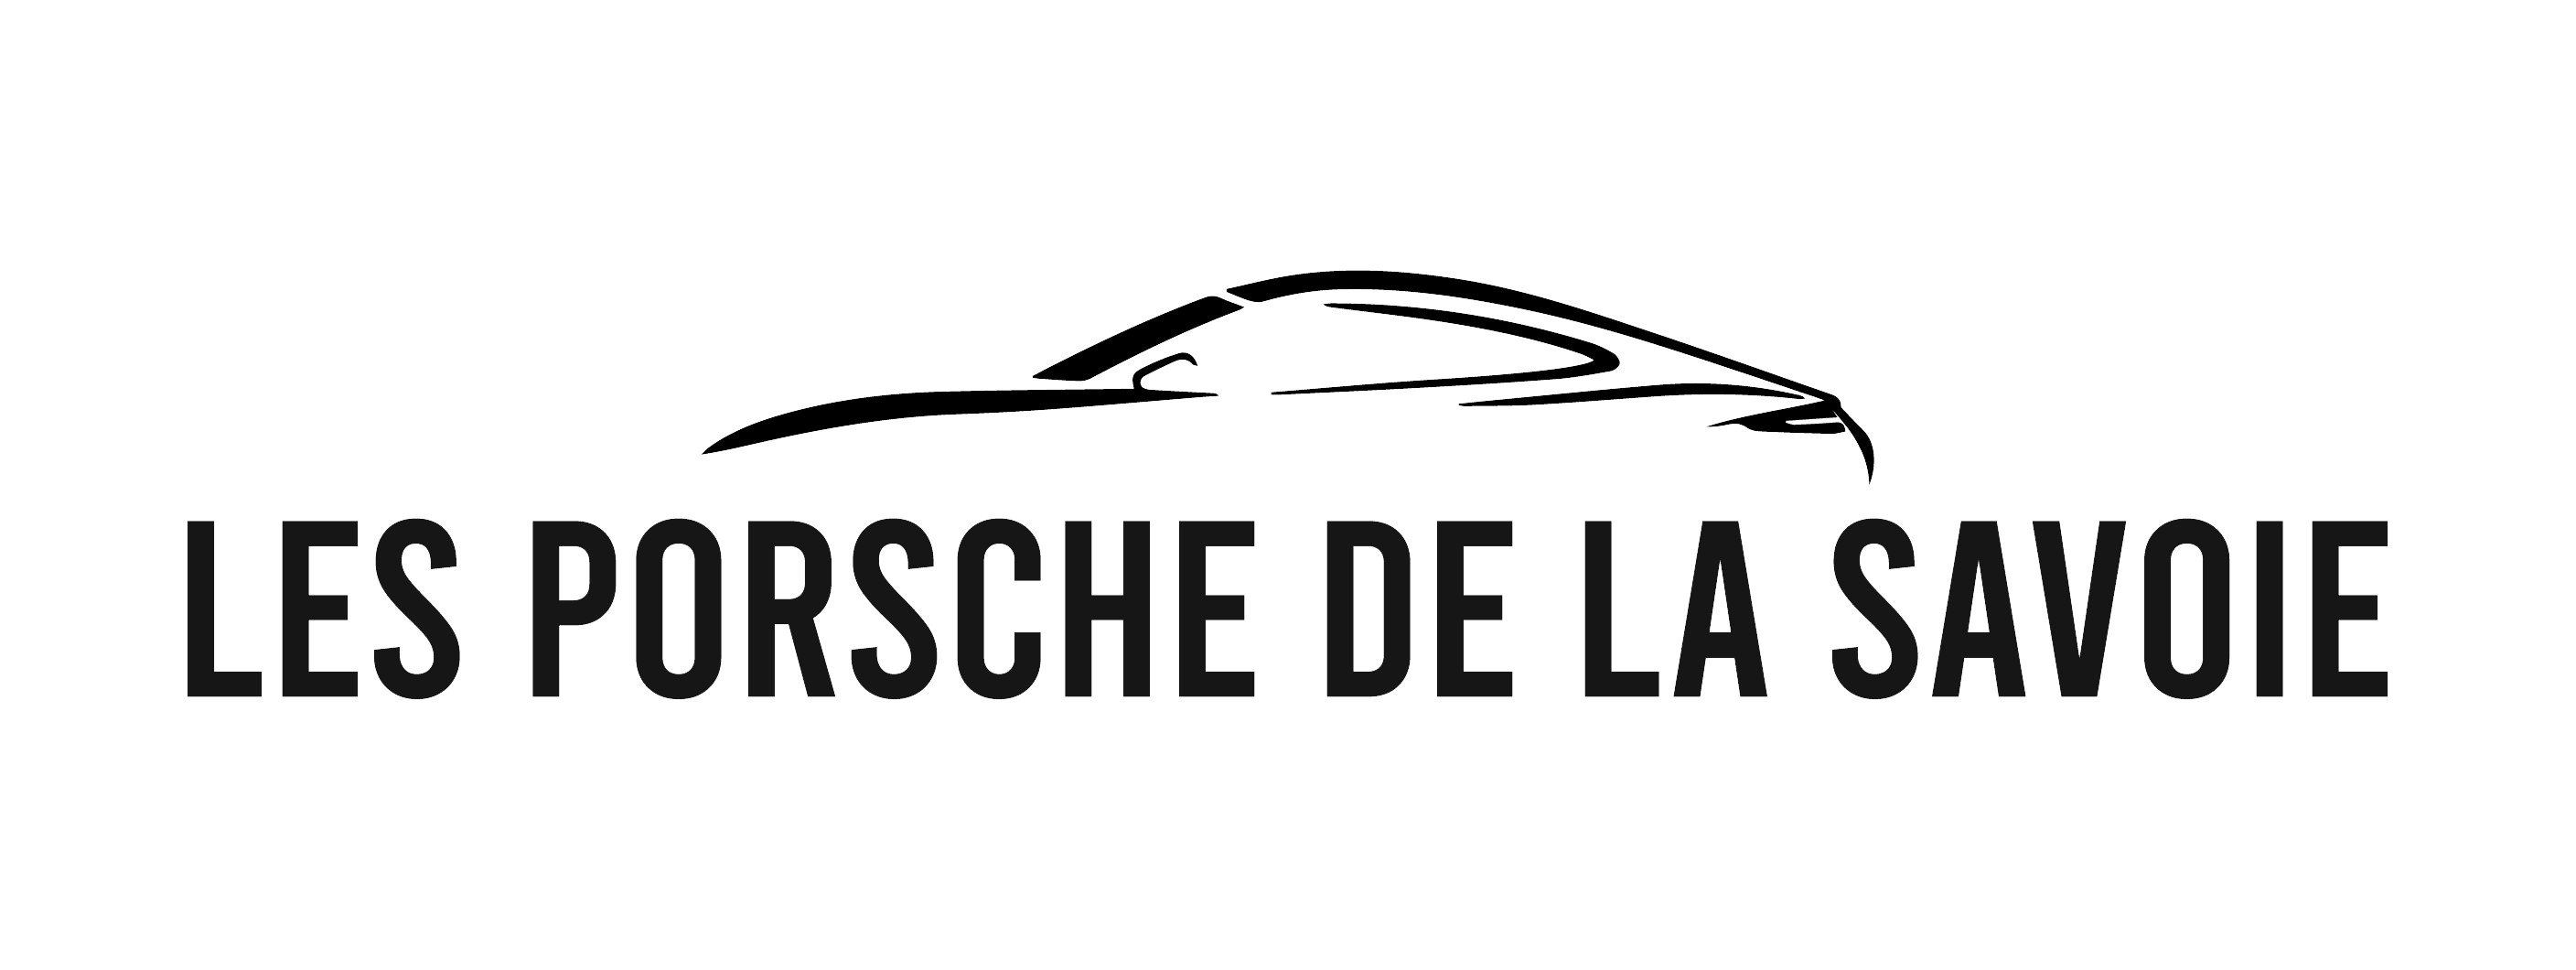 Texte les Porsche de la Savoie